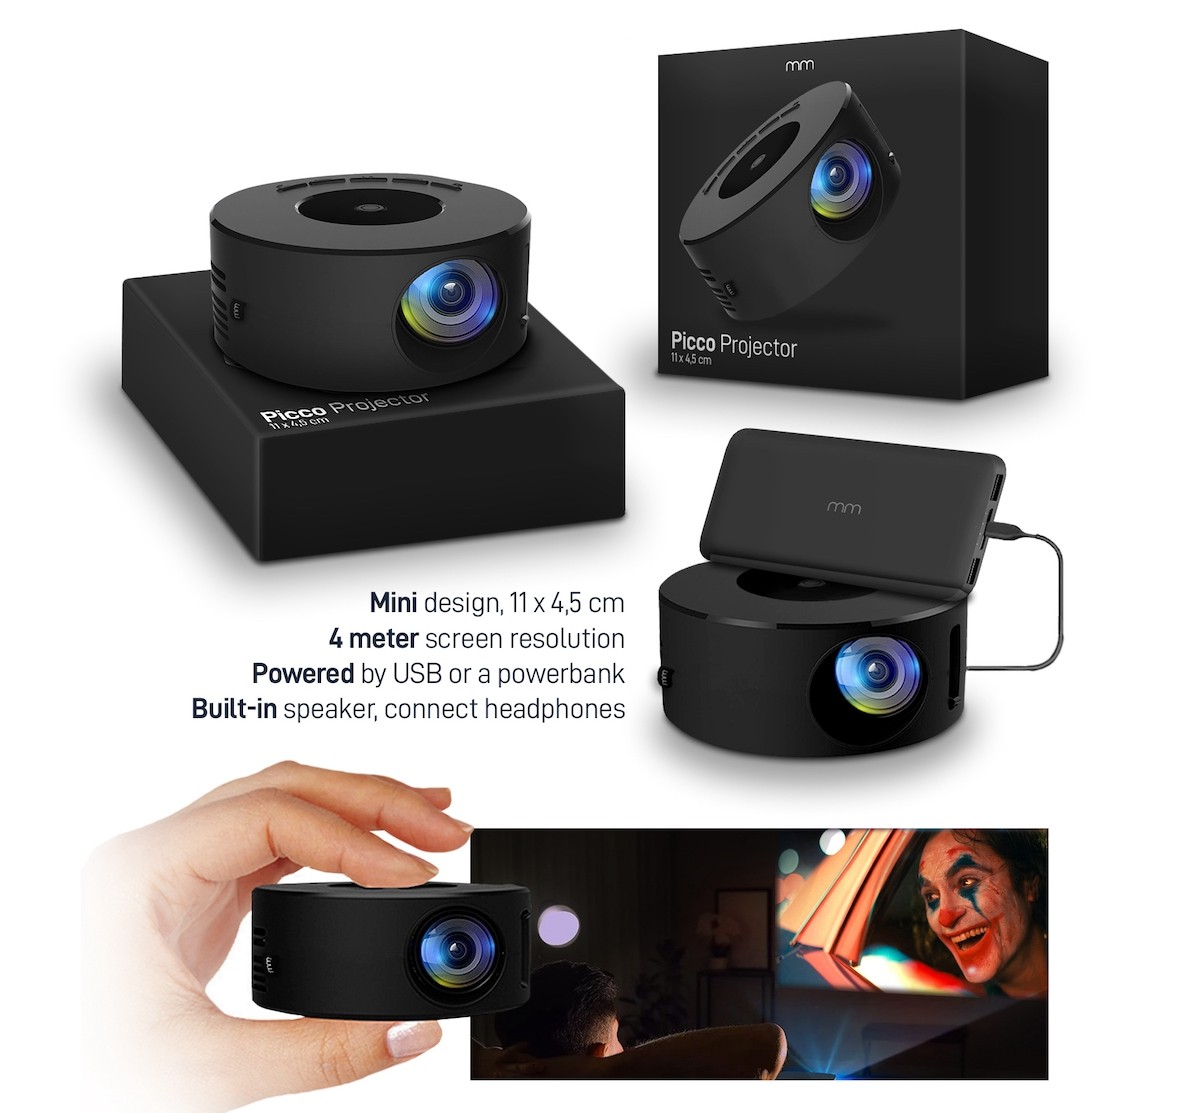 Picco portable mini projector